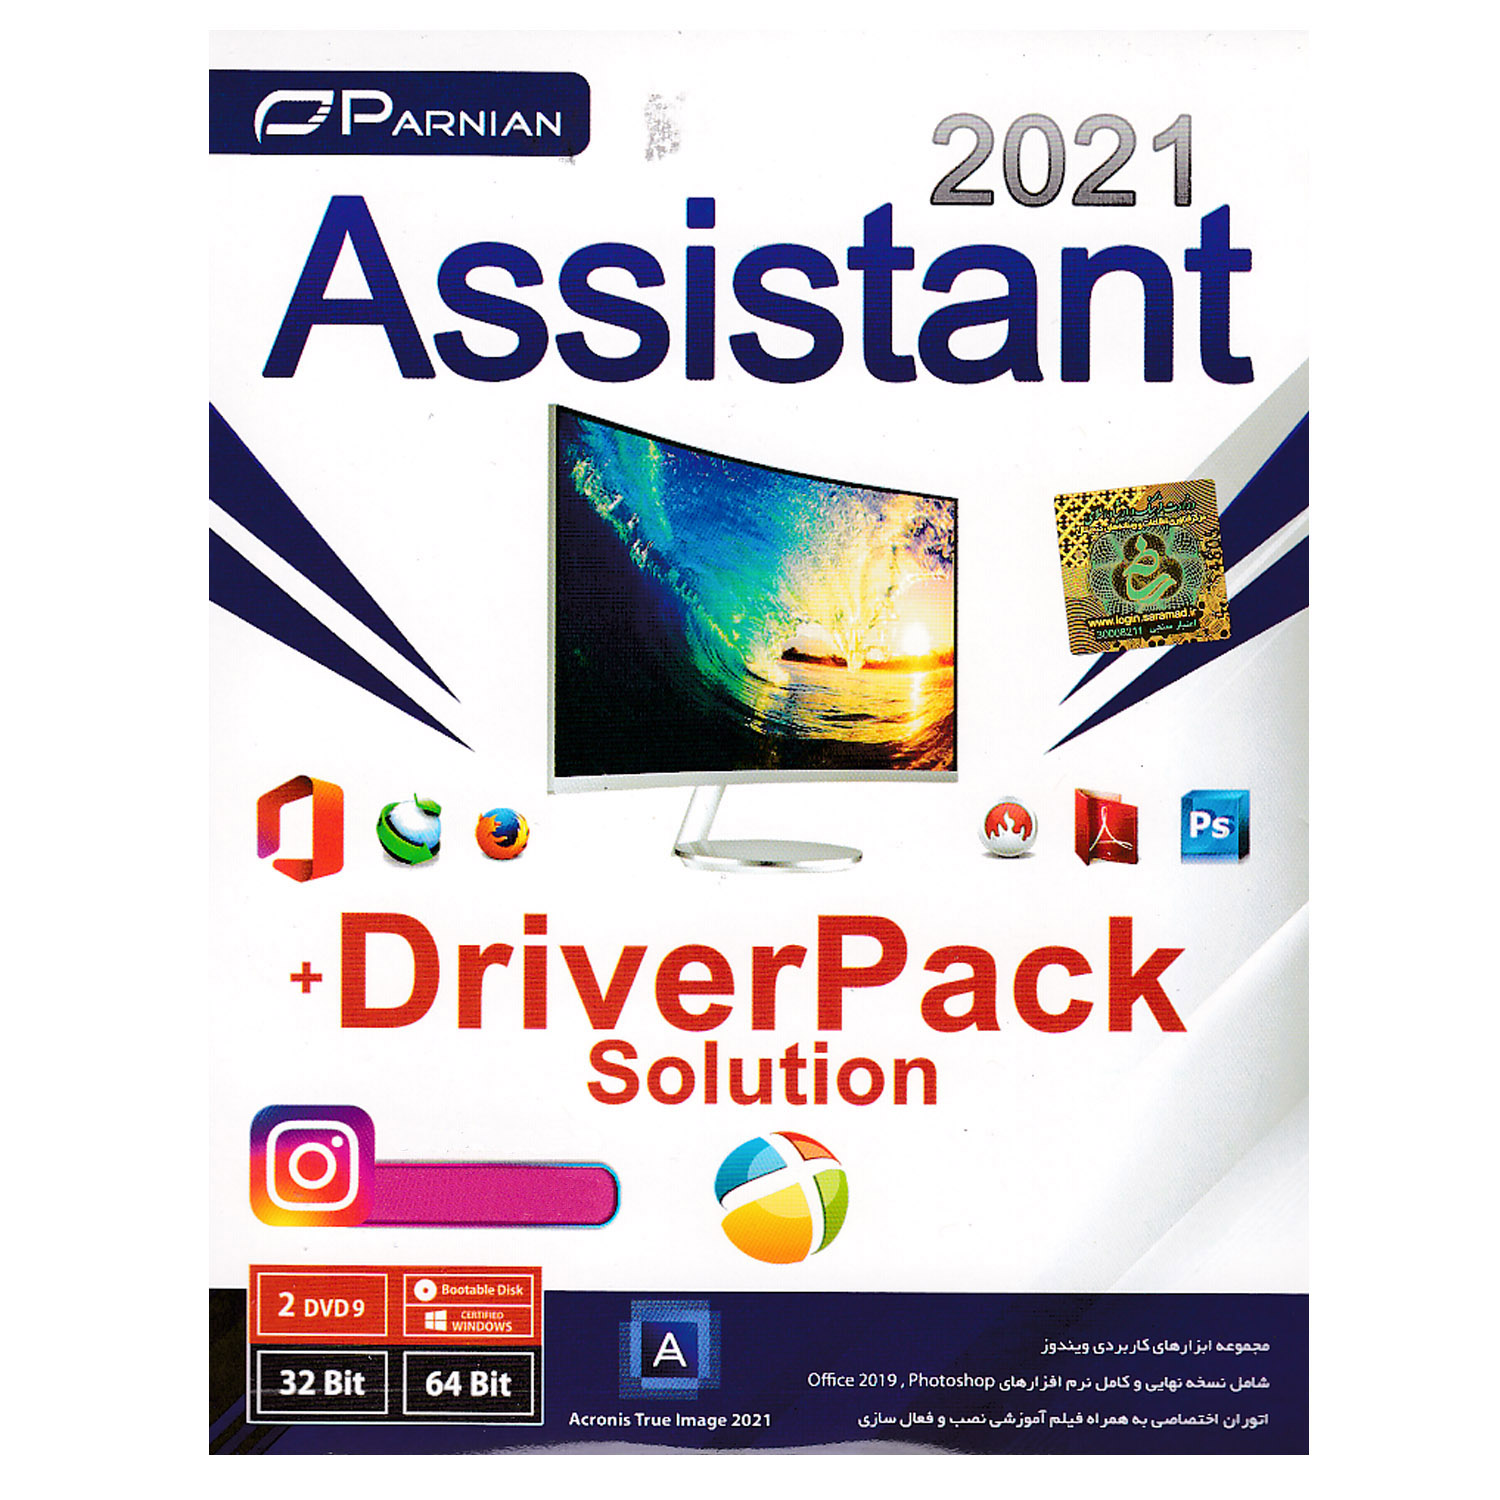 نقد و بررسی مجموعه نرم افزار Assistan 2021 + DriverPack Solution نشر پرنیان توسط خریداران